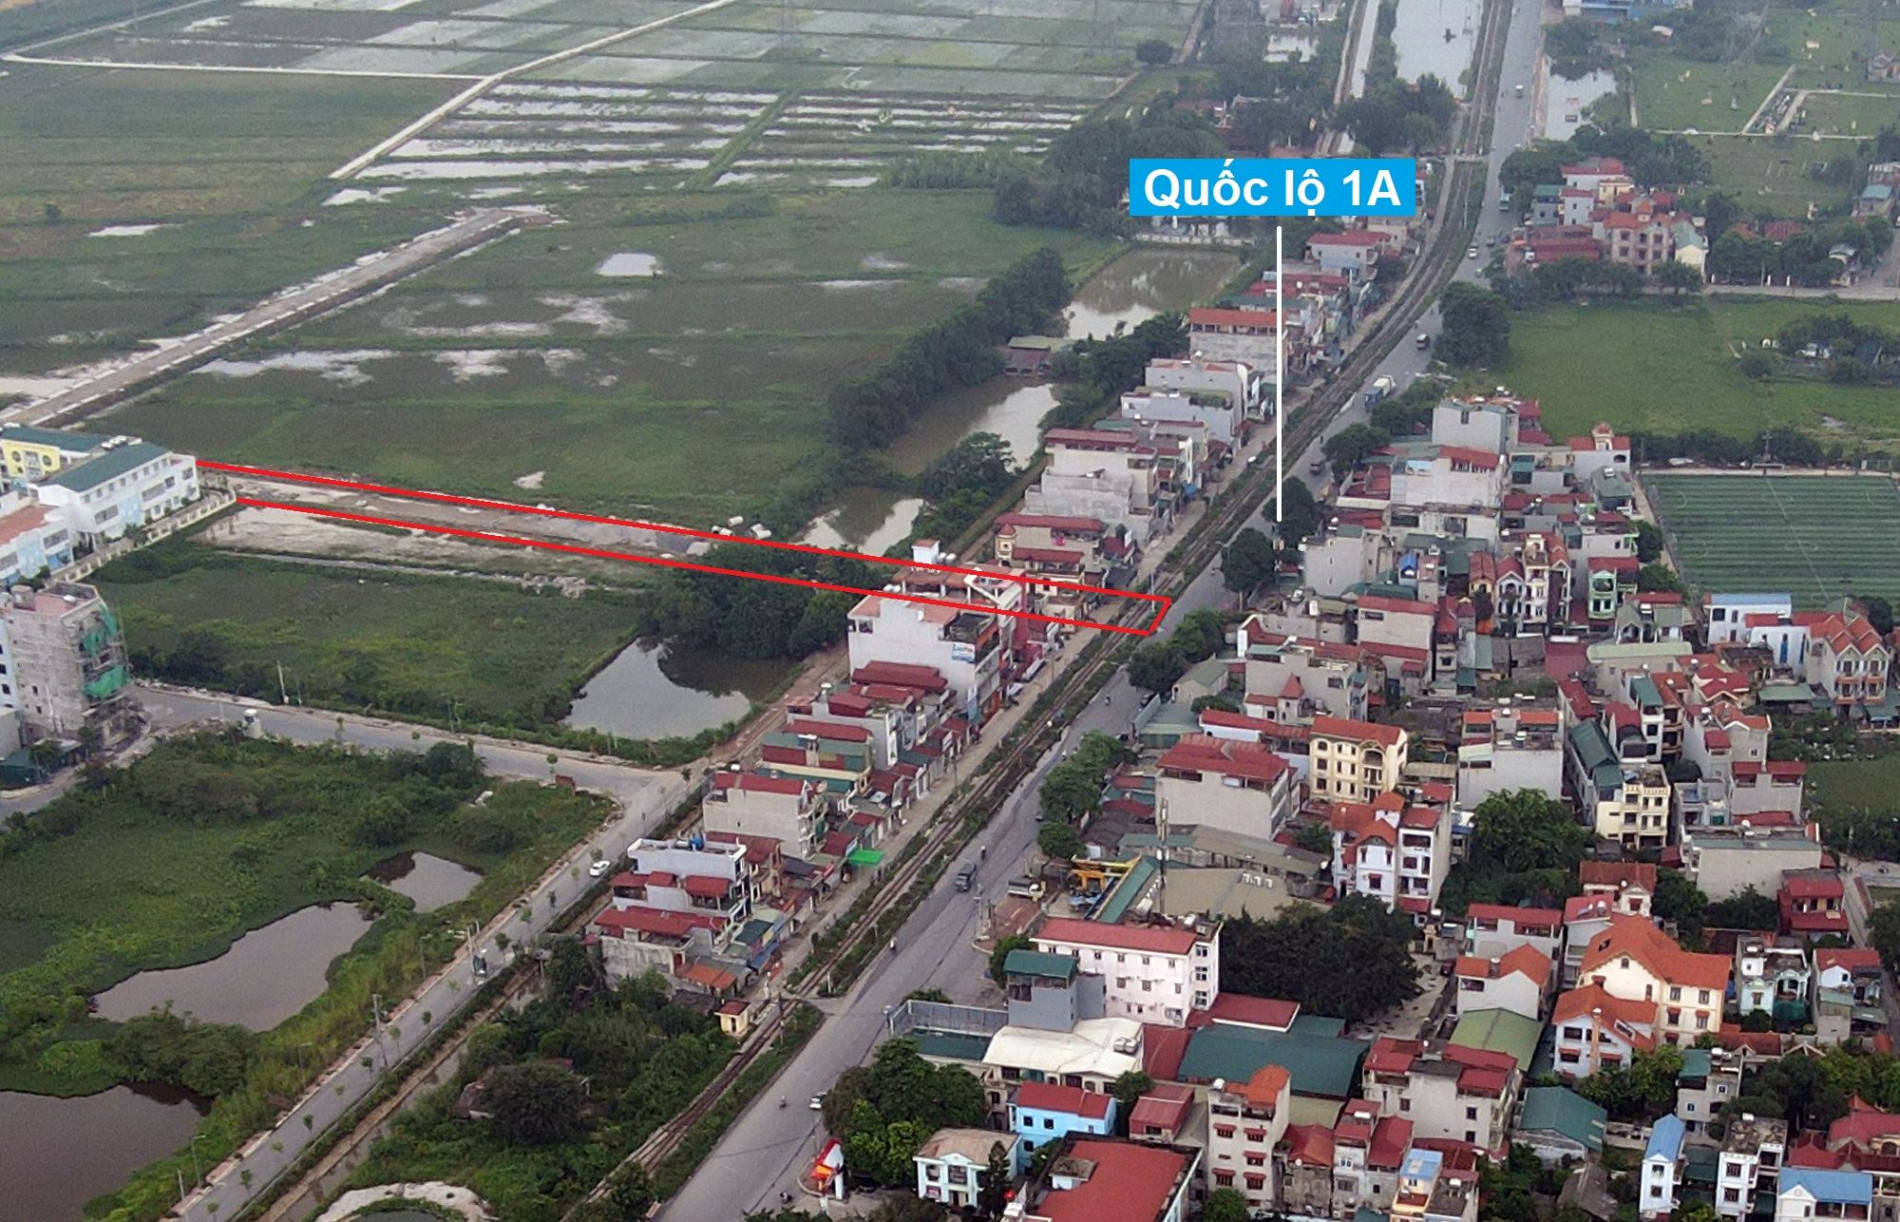 Đường sẽ mở theo quy hoạch ở thị trấn Thường Tín, Thường Tín, Hà Nội (phần 2)